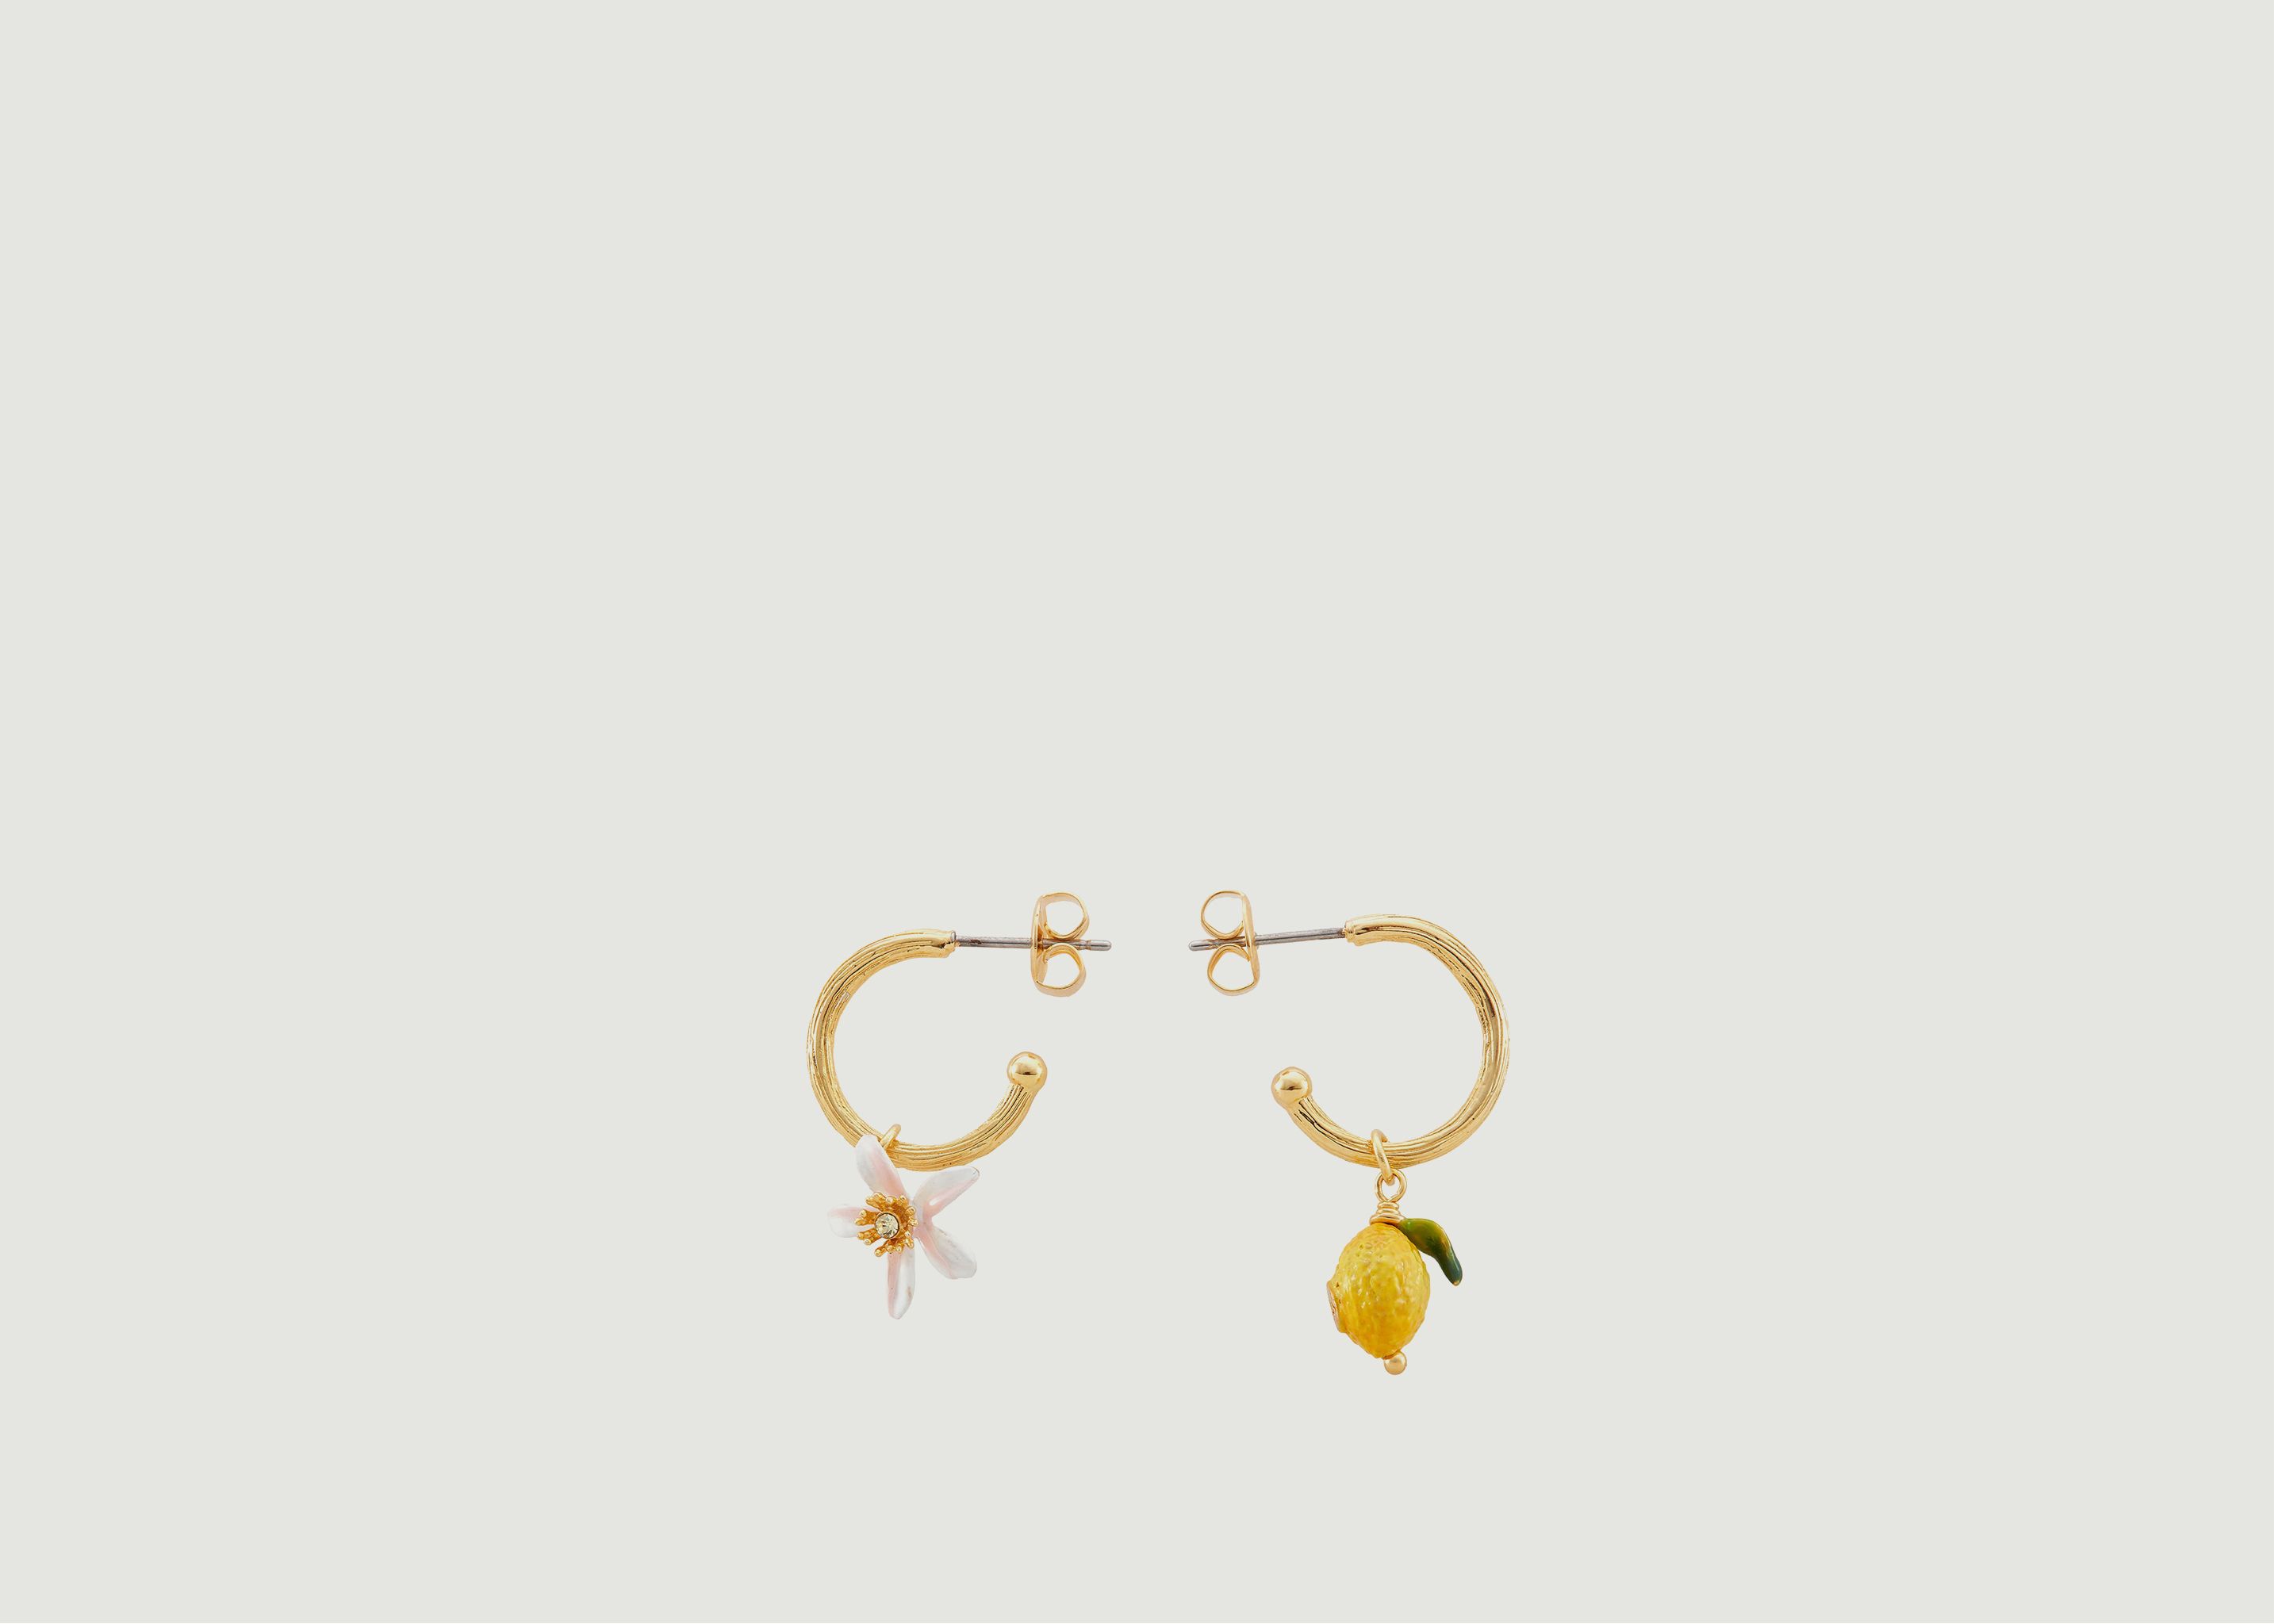 Lemon and lemon flower creole earrings - Les Néréides